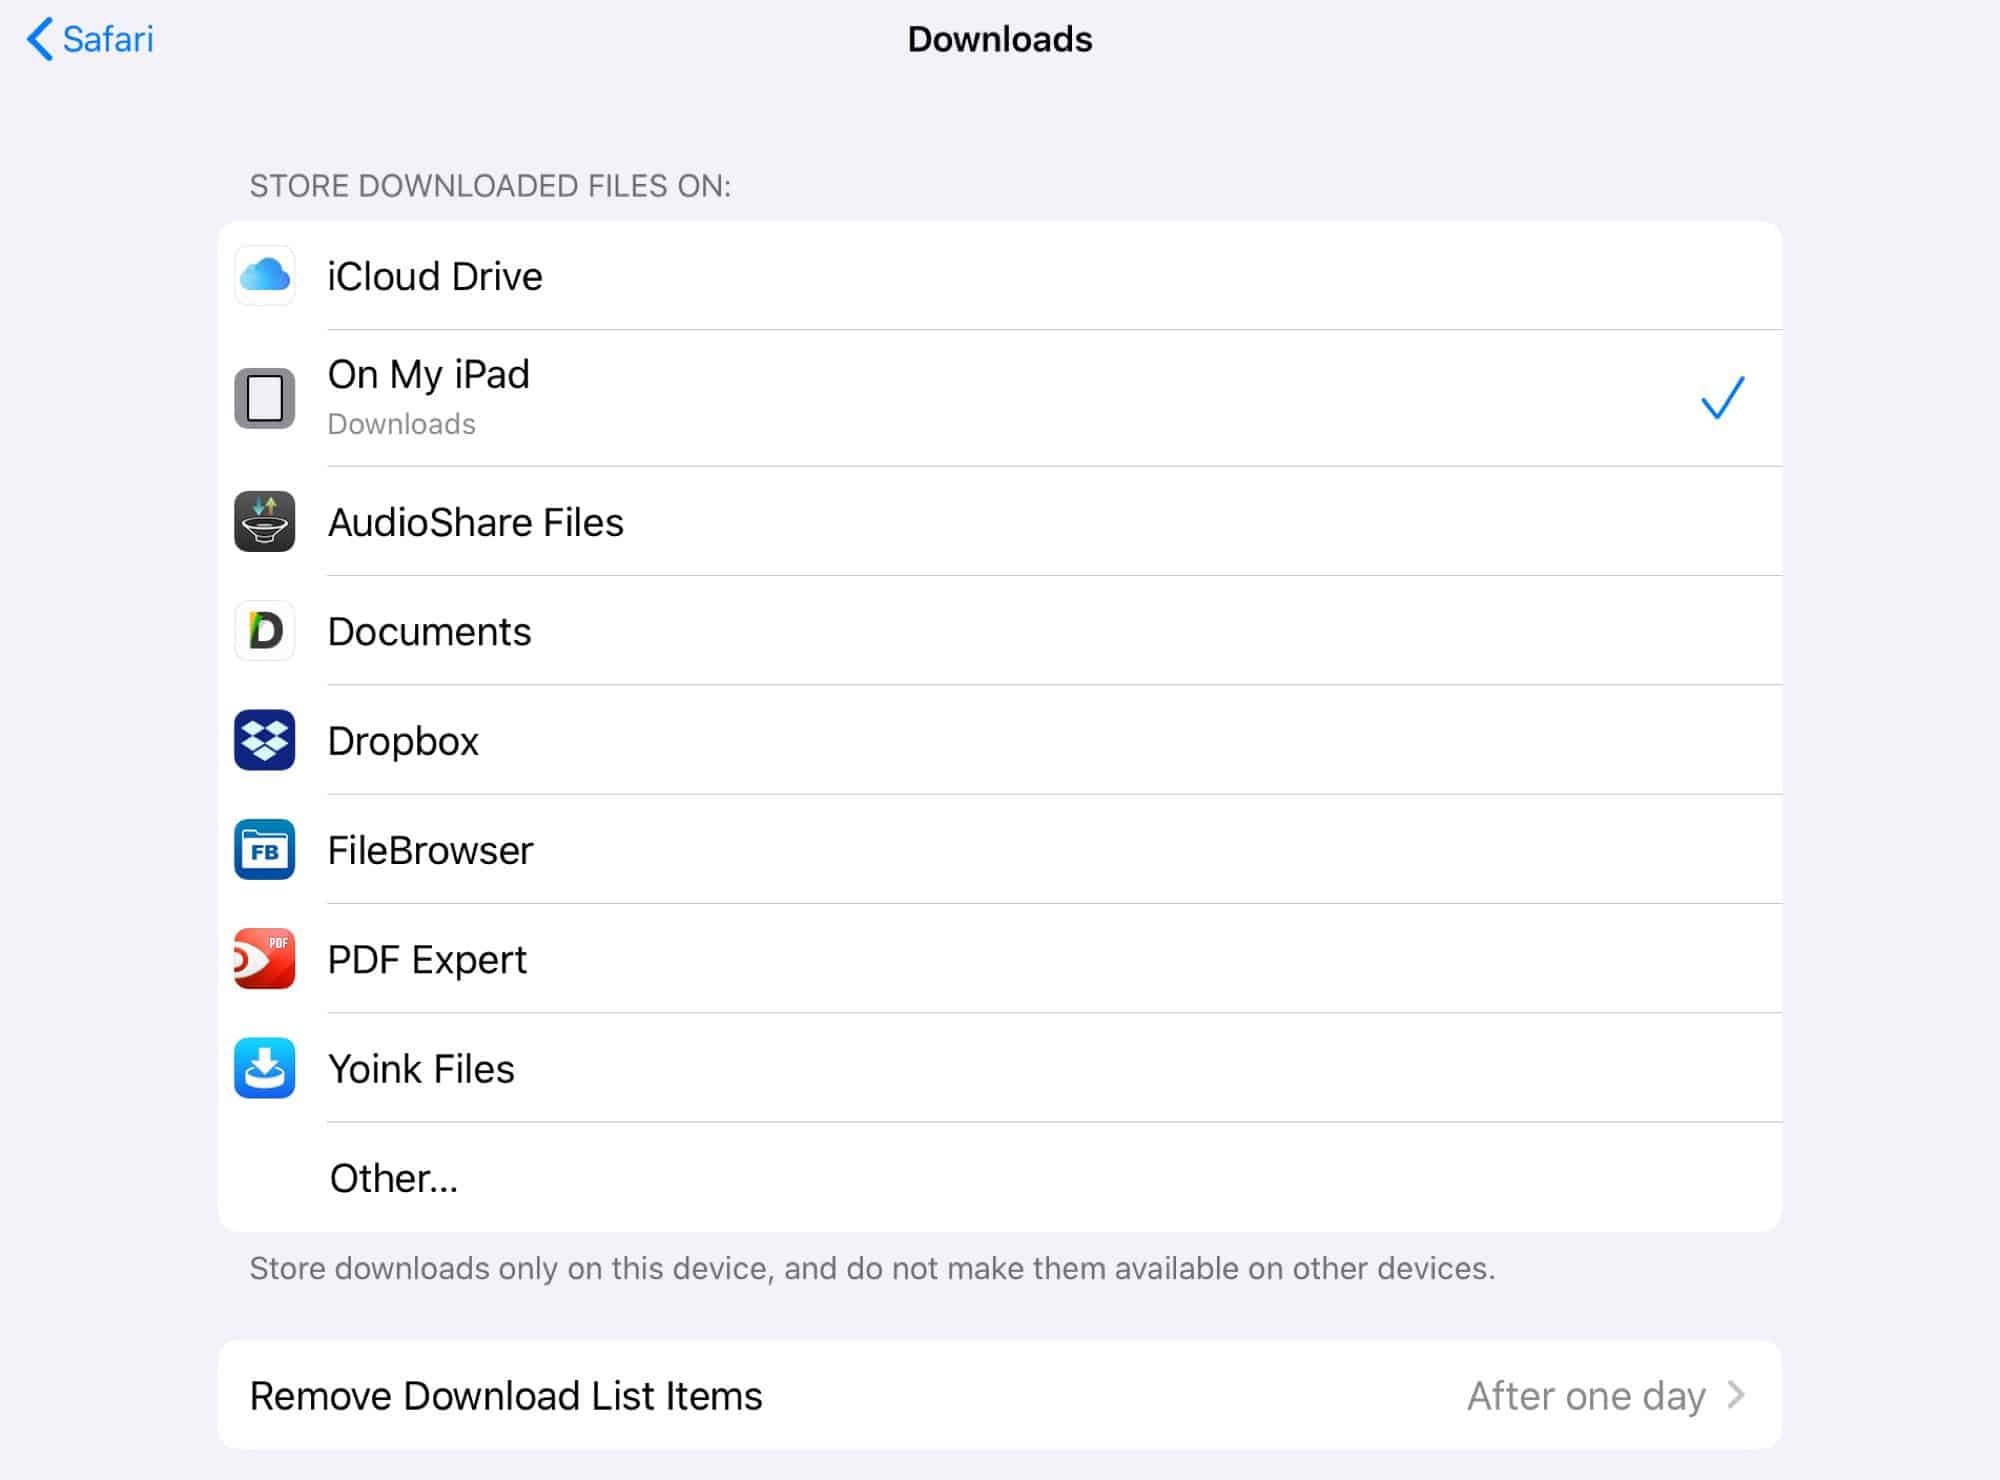 Gestionnaire de téléchargement iOS 13 Safari pour iPad